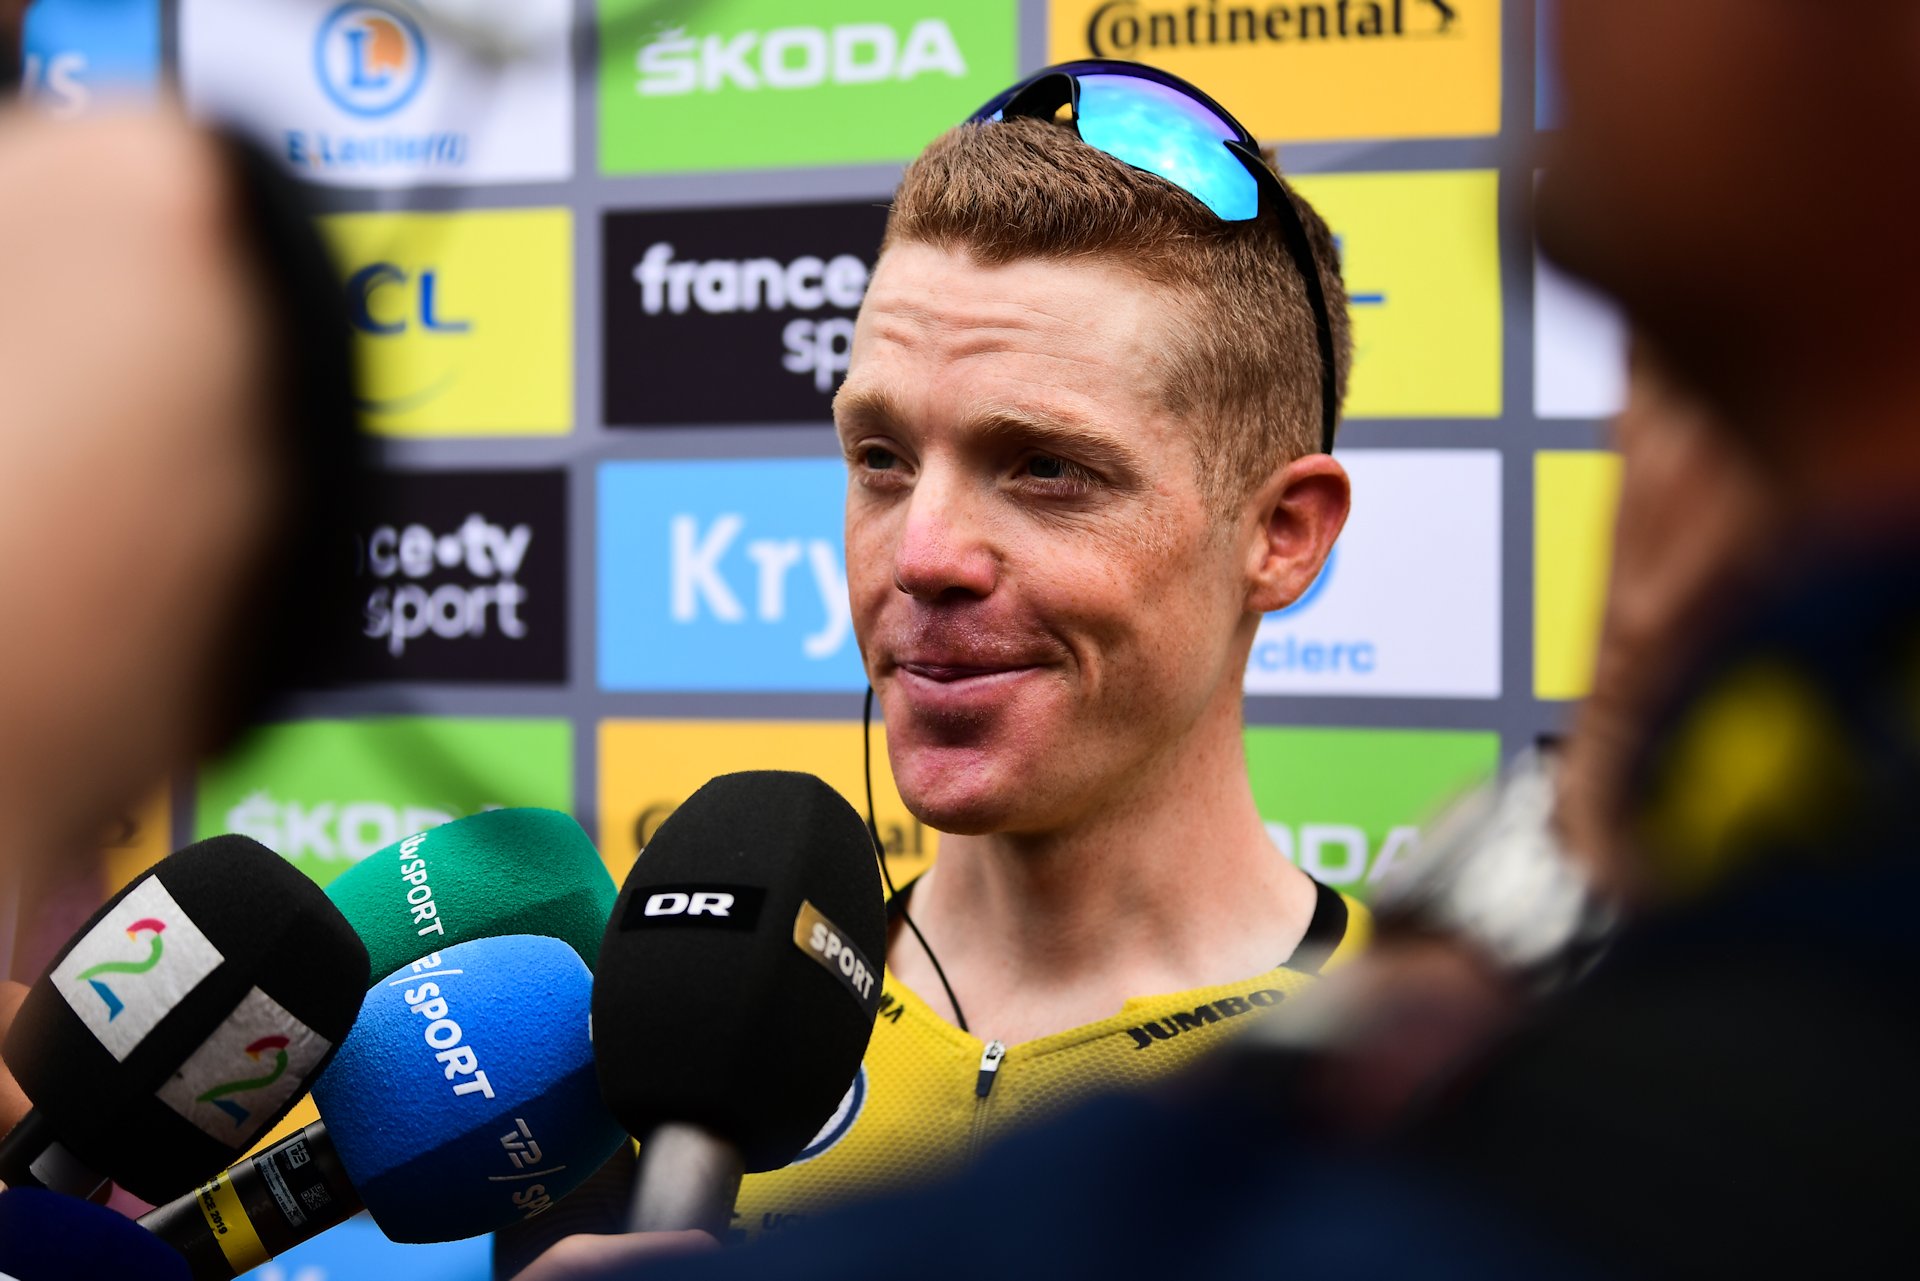 Tour de France 2019. Steven Kruijswijk pierwszy raz na podium Grand Touru